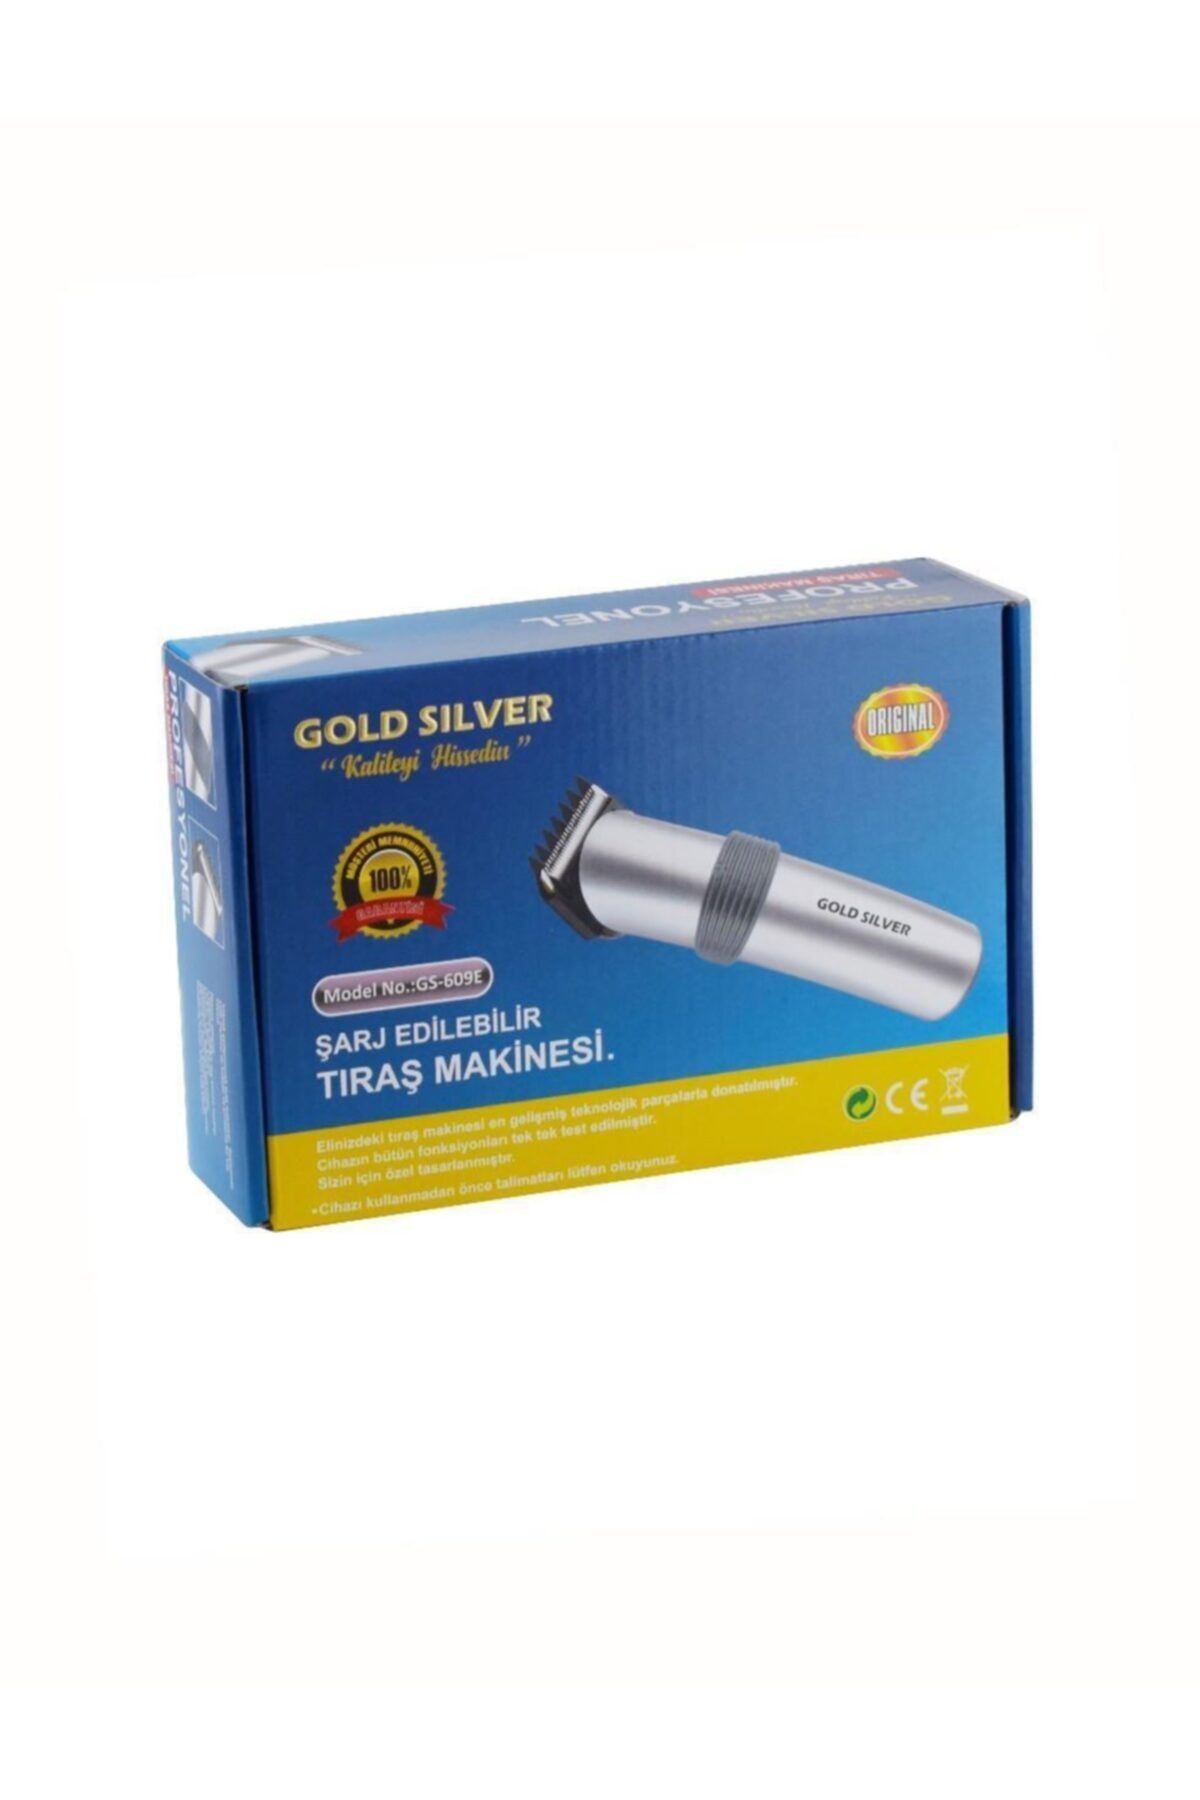 GoldSilver Gold Silver Gs 609e Profesyonel Saç Kesme Makinesi Gold Silver Gs 609e Tıraş Makinesi